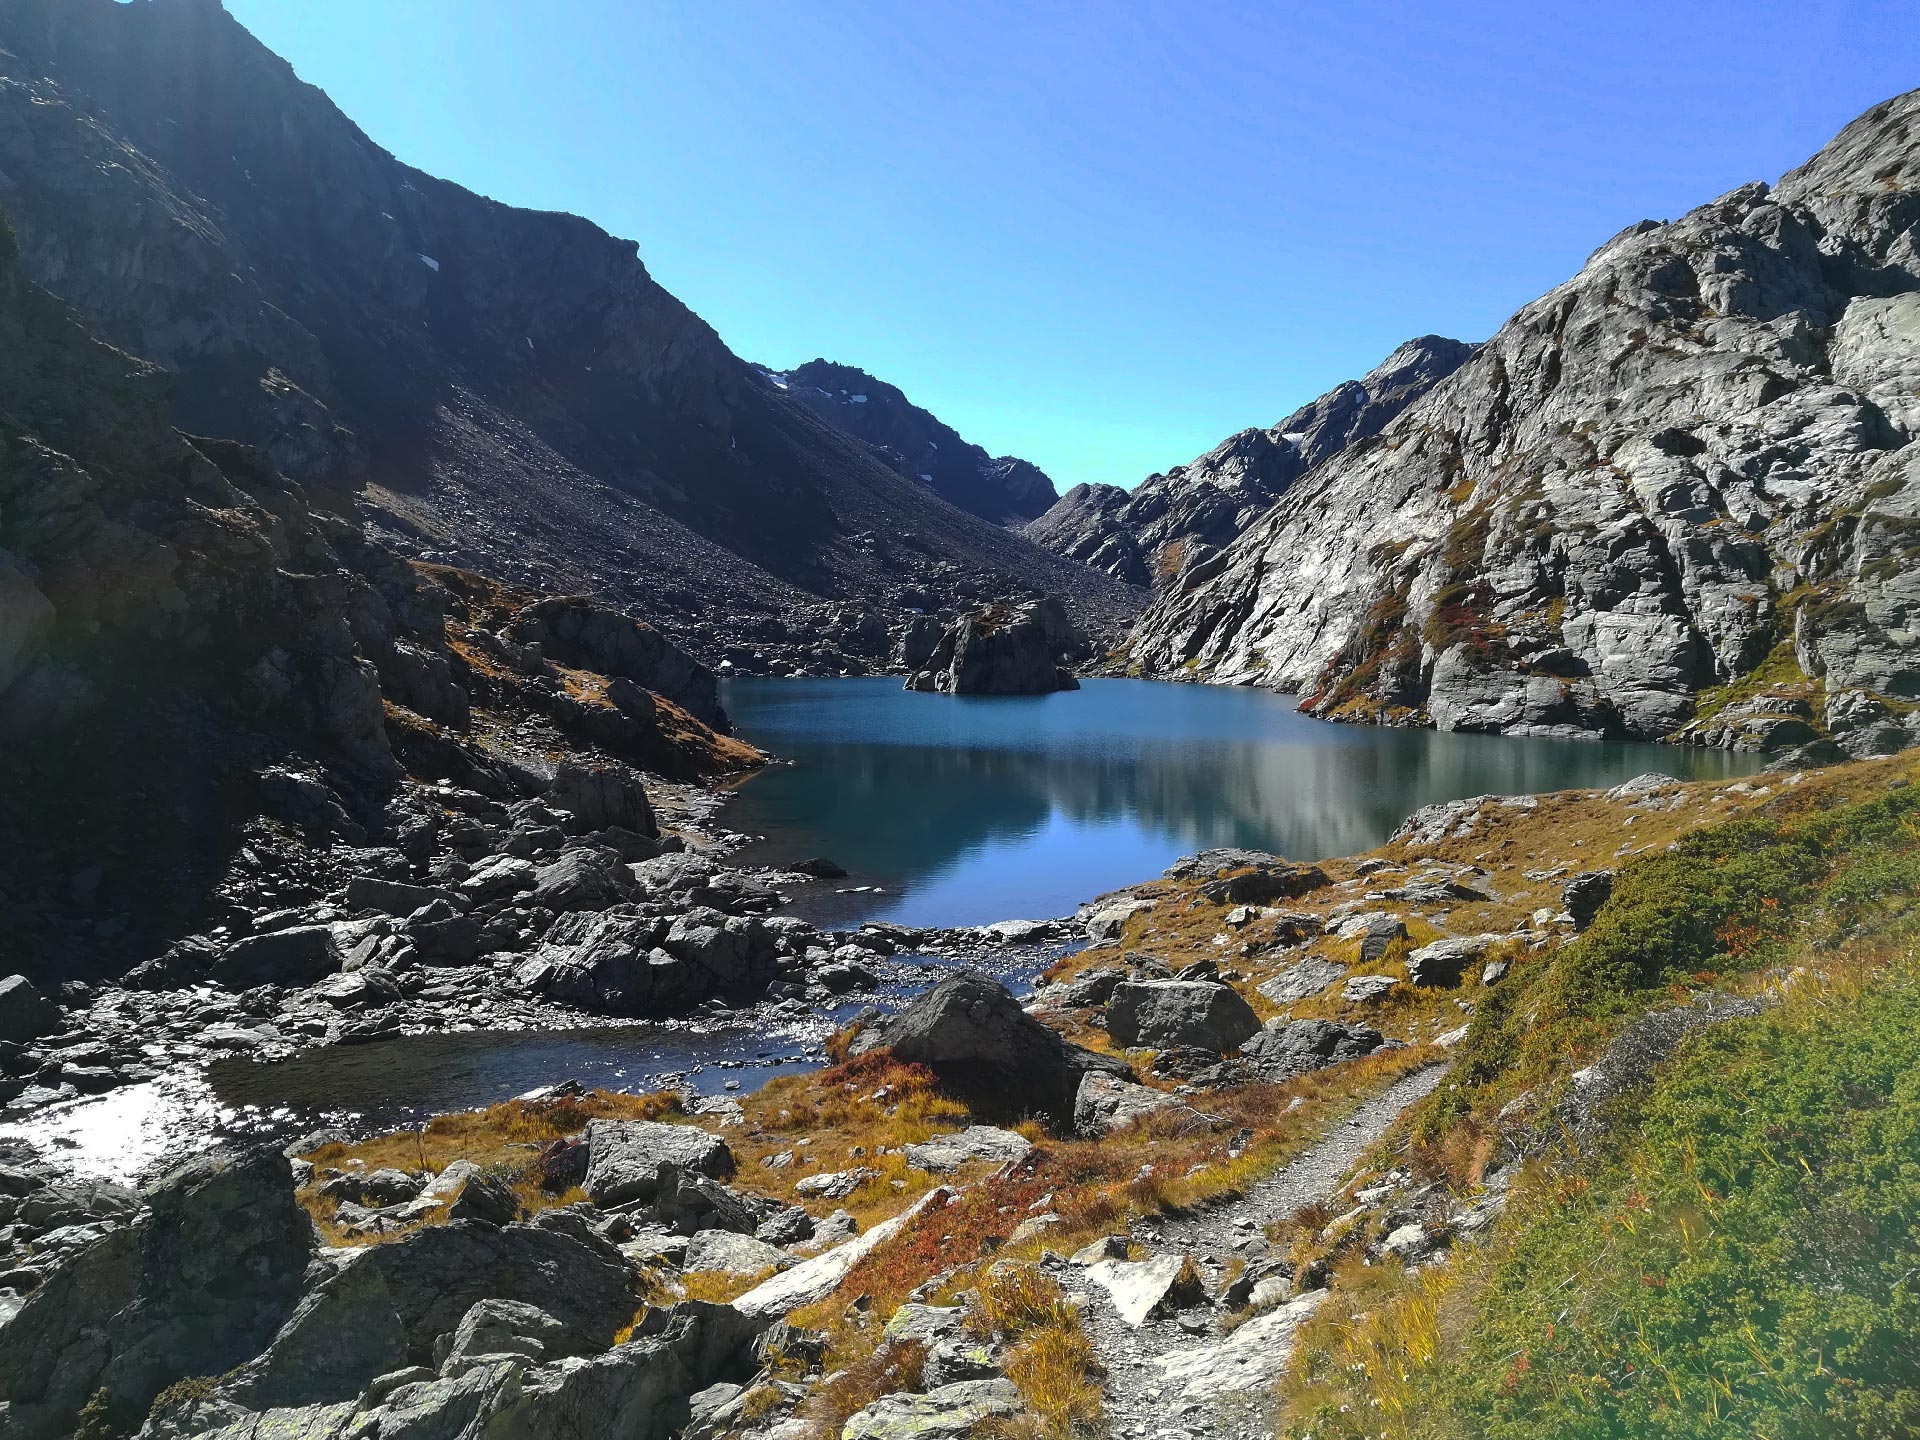 il secondo lago di Bellecombe circondato da montagne rocciose, la Thuile, Valle d'Aosta